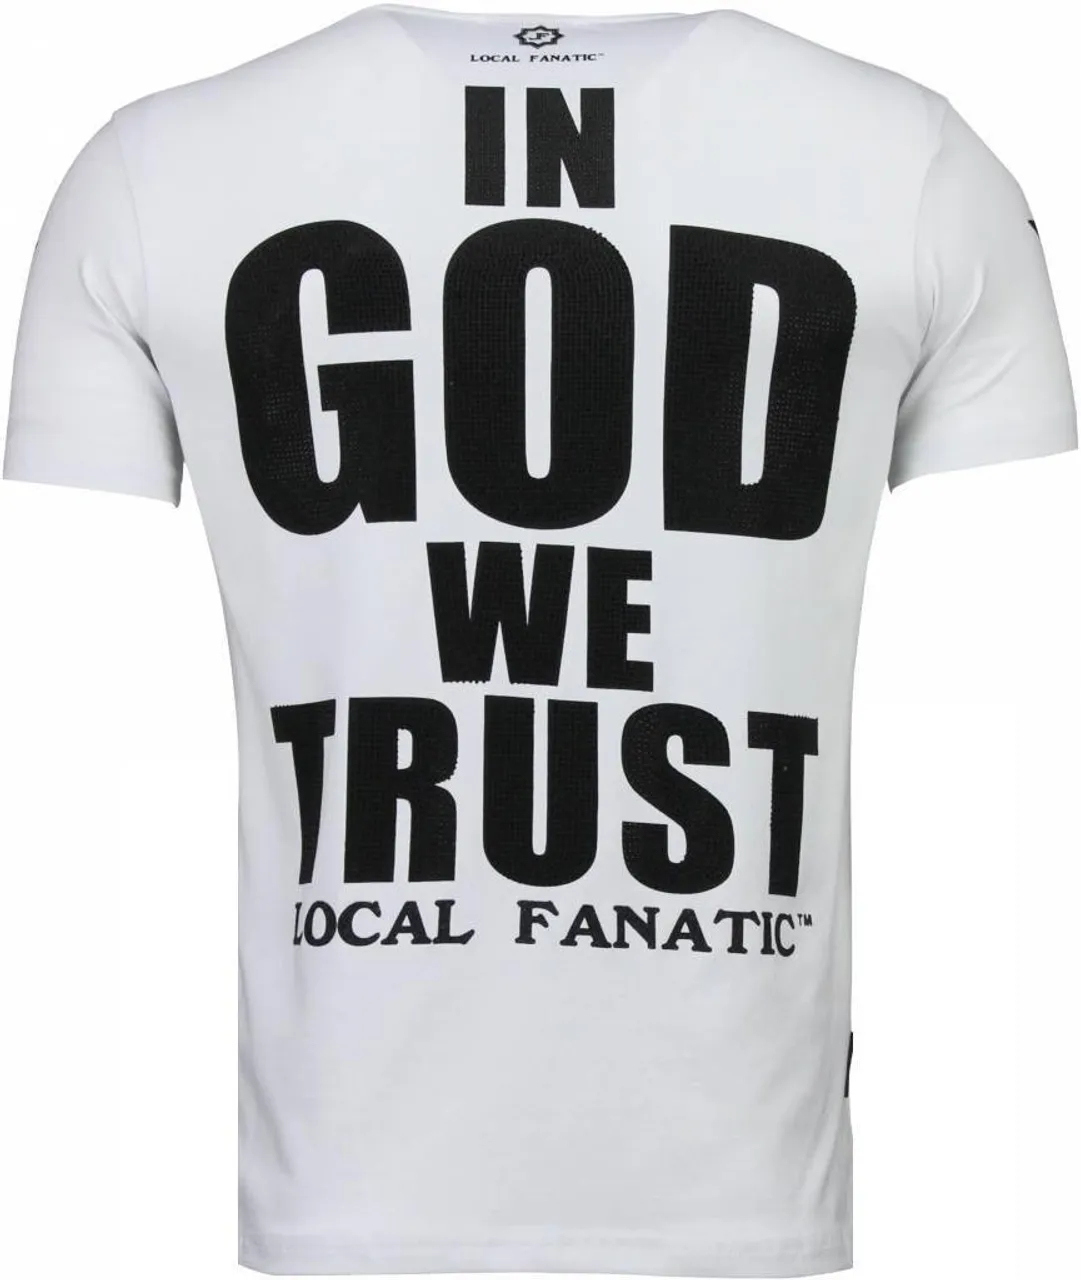 Local Fanatic Trust in my power rhinestone t-shirt